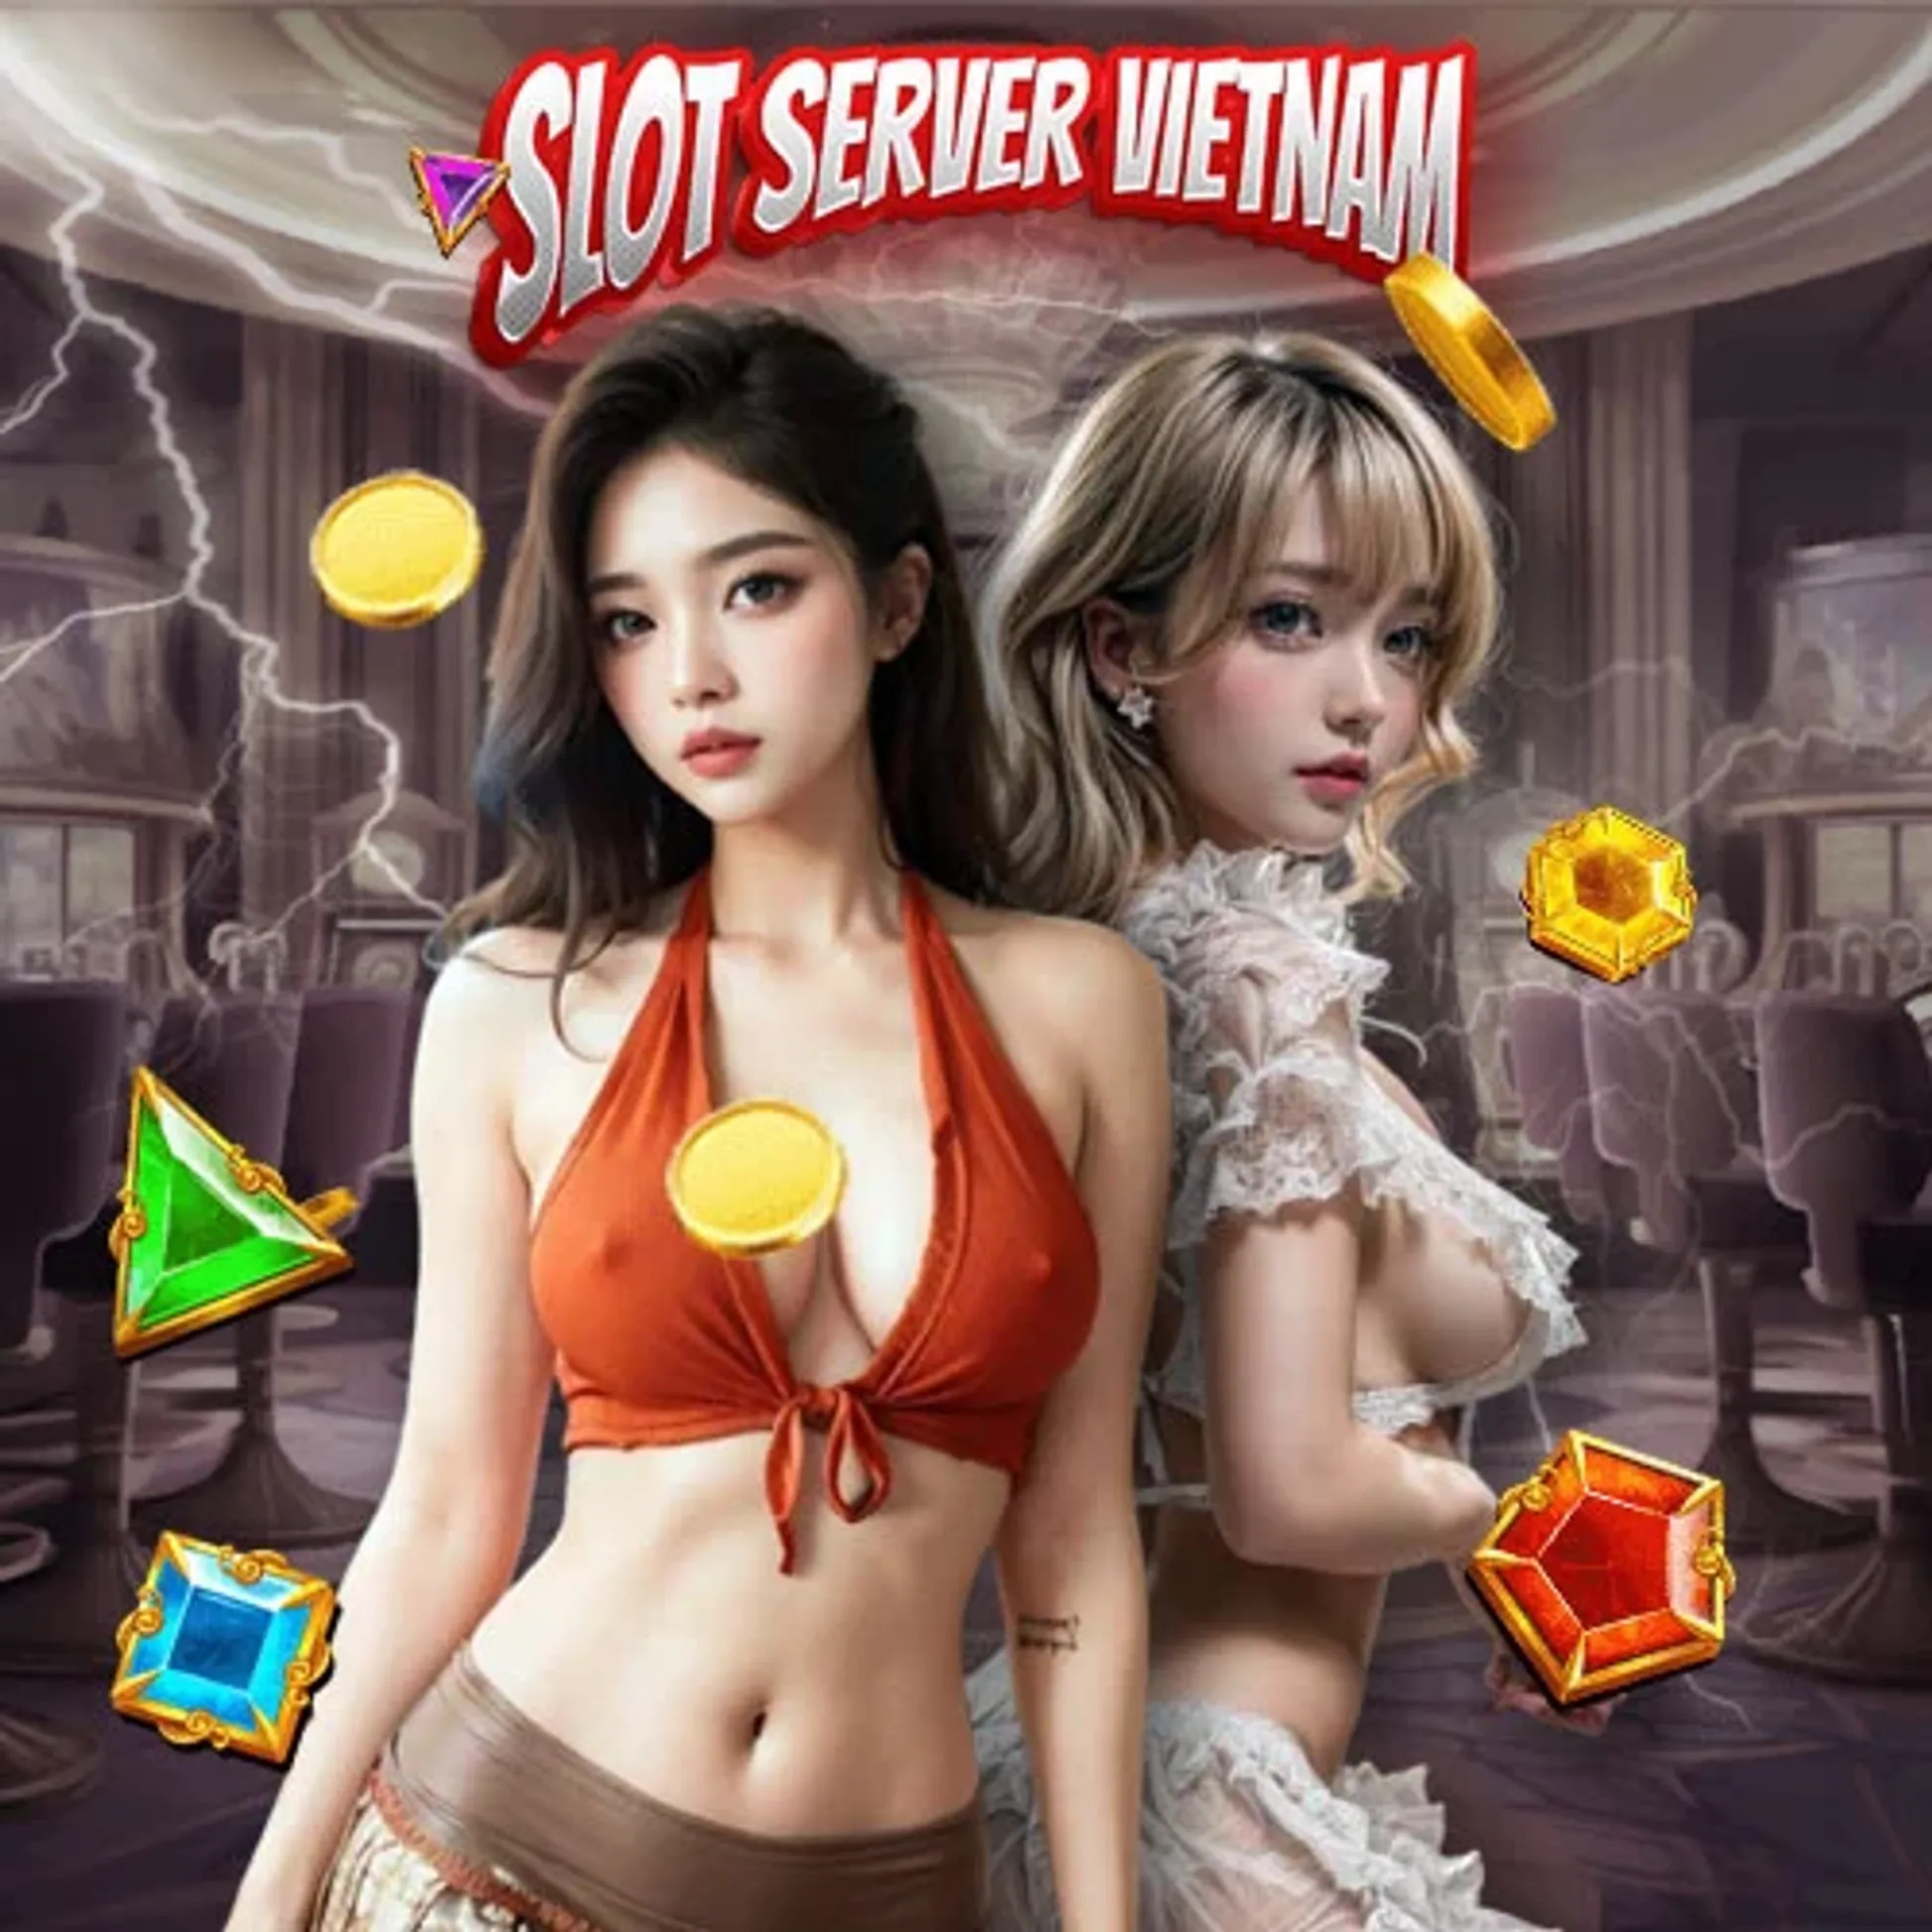 Raih Kemenangan Besar dengan Slot777 Vietnam: Tips Profesional untuk Menang